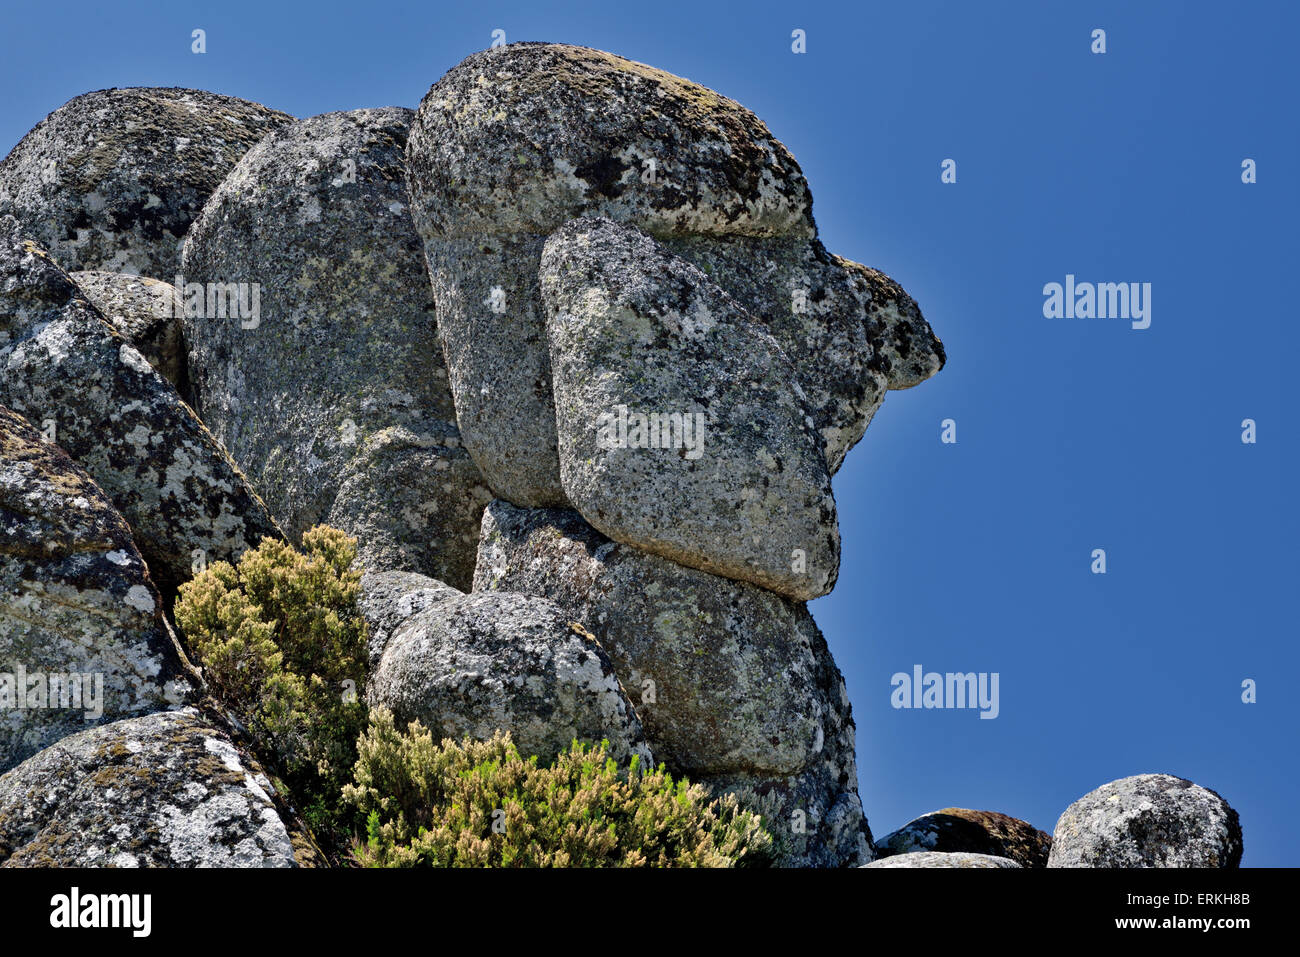 Portugal: "formación de piedras graníticas Cabeça do Velho" ((Jefe del viejo hombre) en la región de la montaña Serra da Estrela Foto de stock